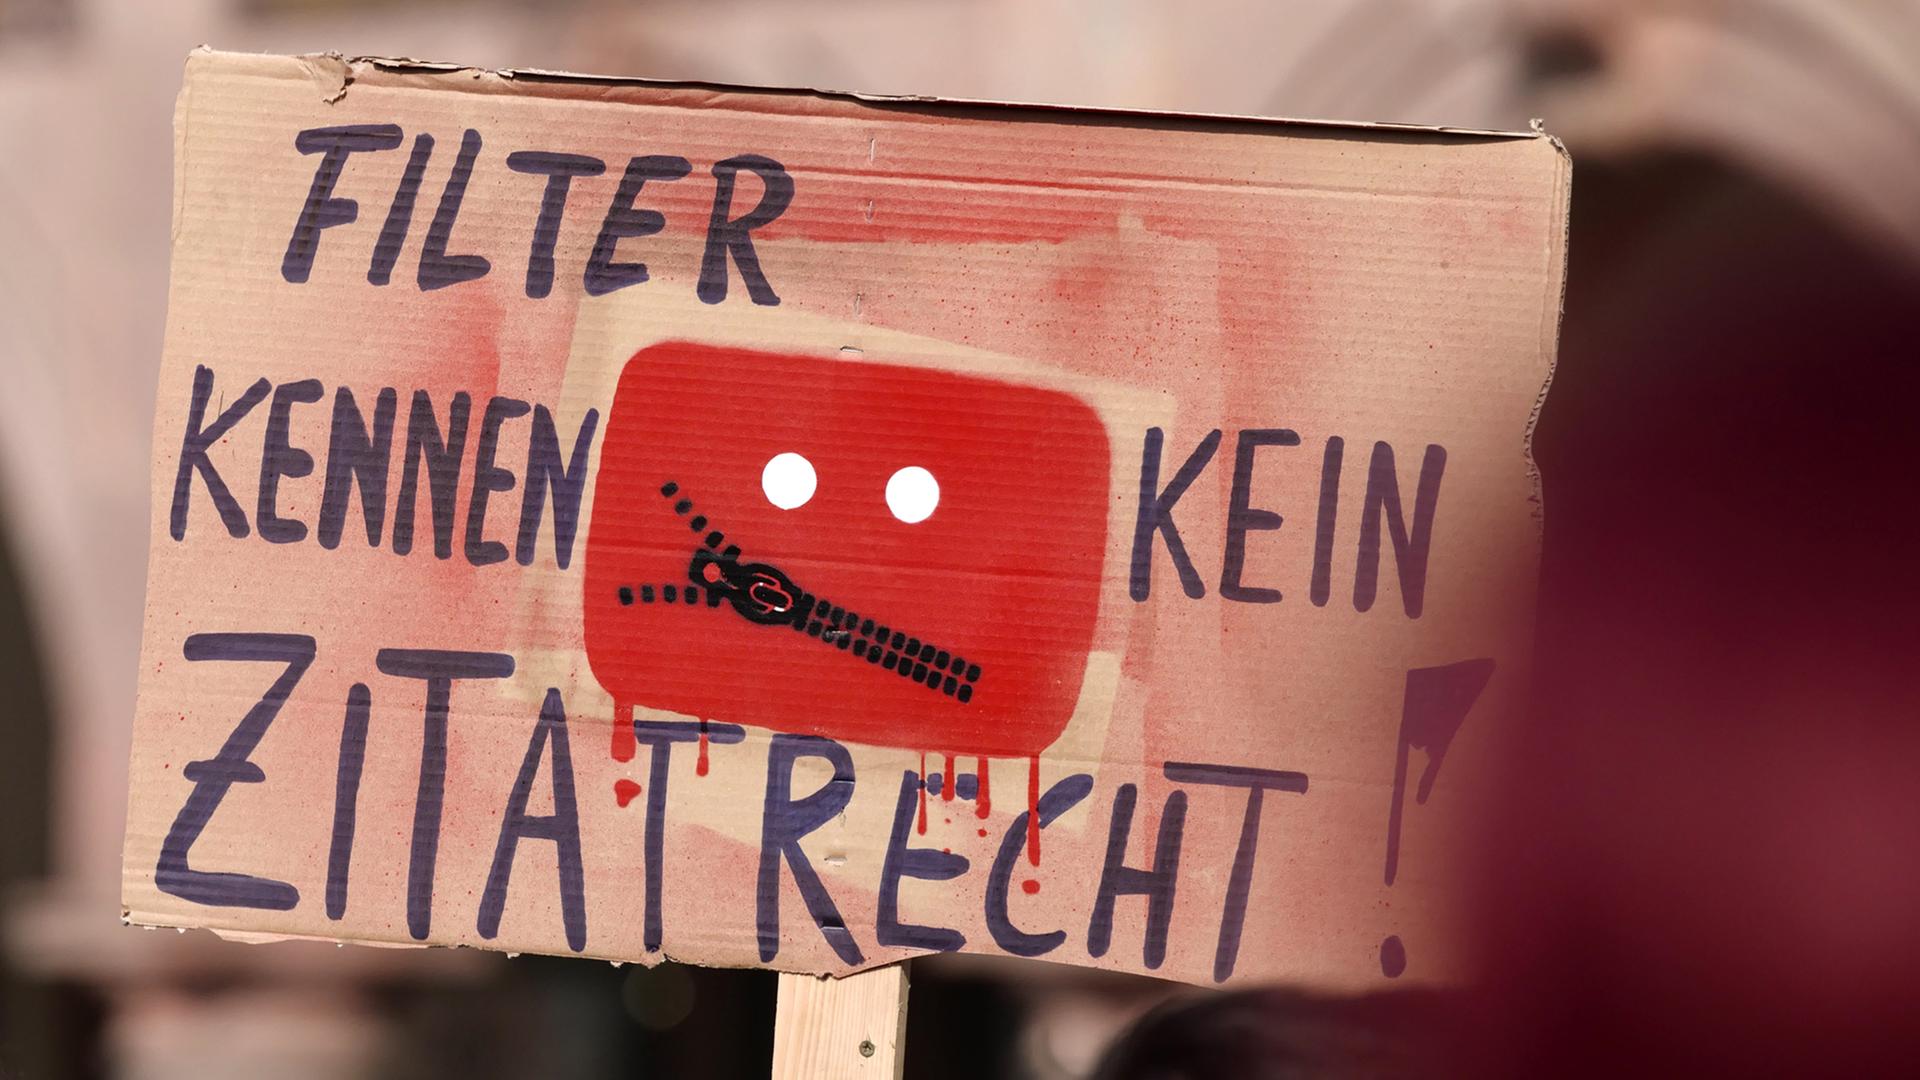 Schild mit der Aufschrift "Filter kennen kein Zitatrecht" auf der Demonstration "Save the Internet" gegen Uploadfilter am 23. März in Leipzig.